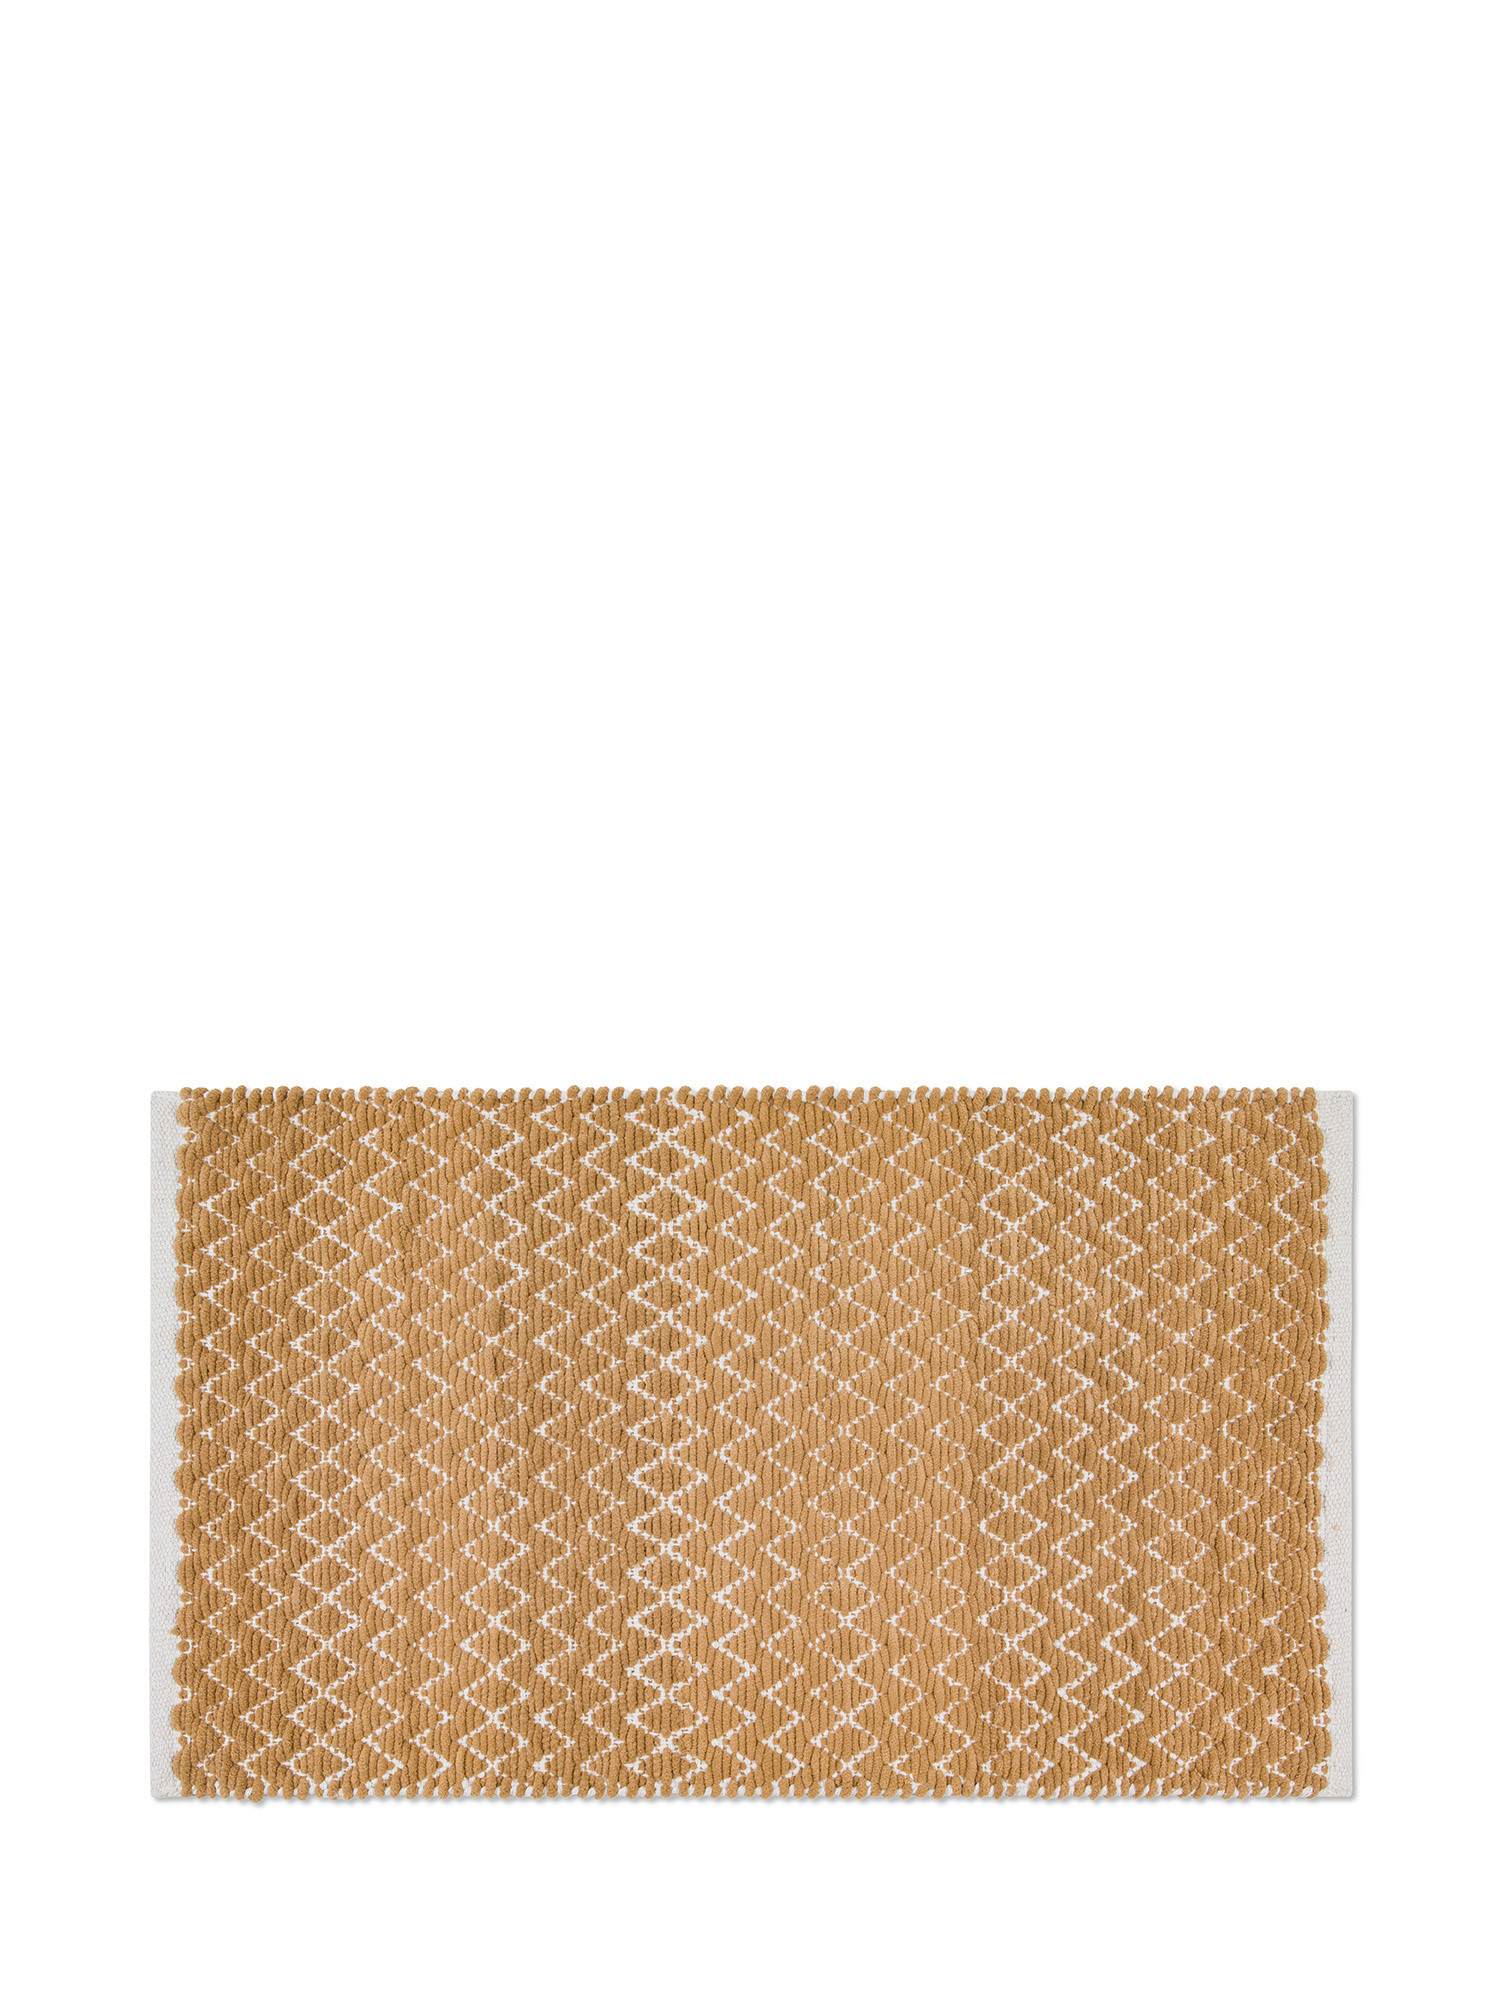 молитвенный коврик iqrah из синели украшенный вазой бордового цвета Коврик для ванной из микрохлопка синели с зигзагообразным узором Coincasa, бежевый